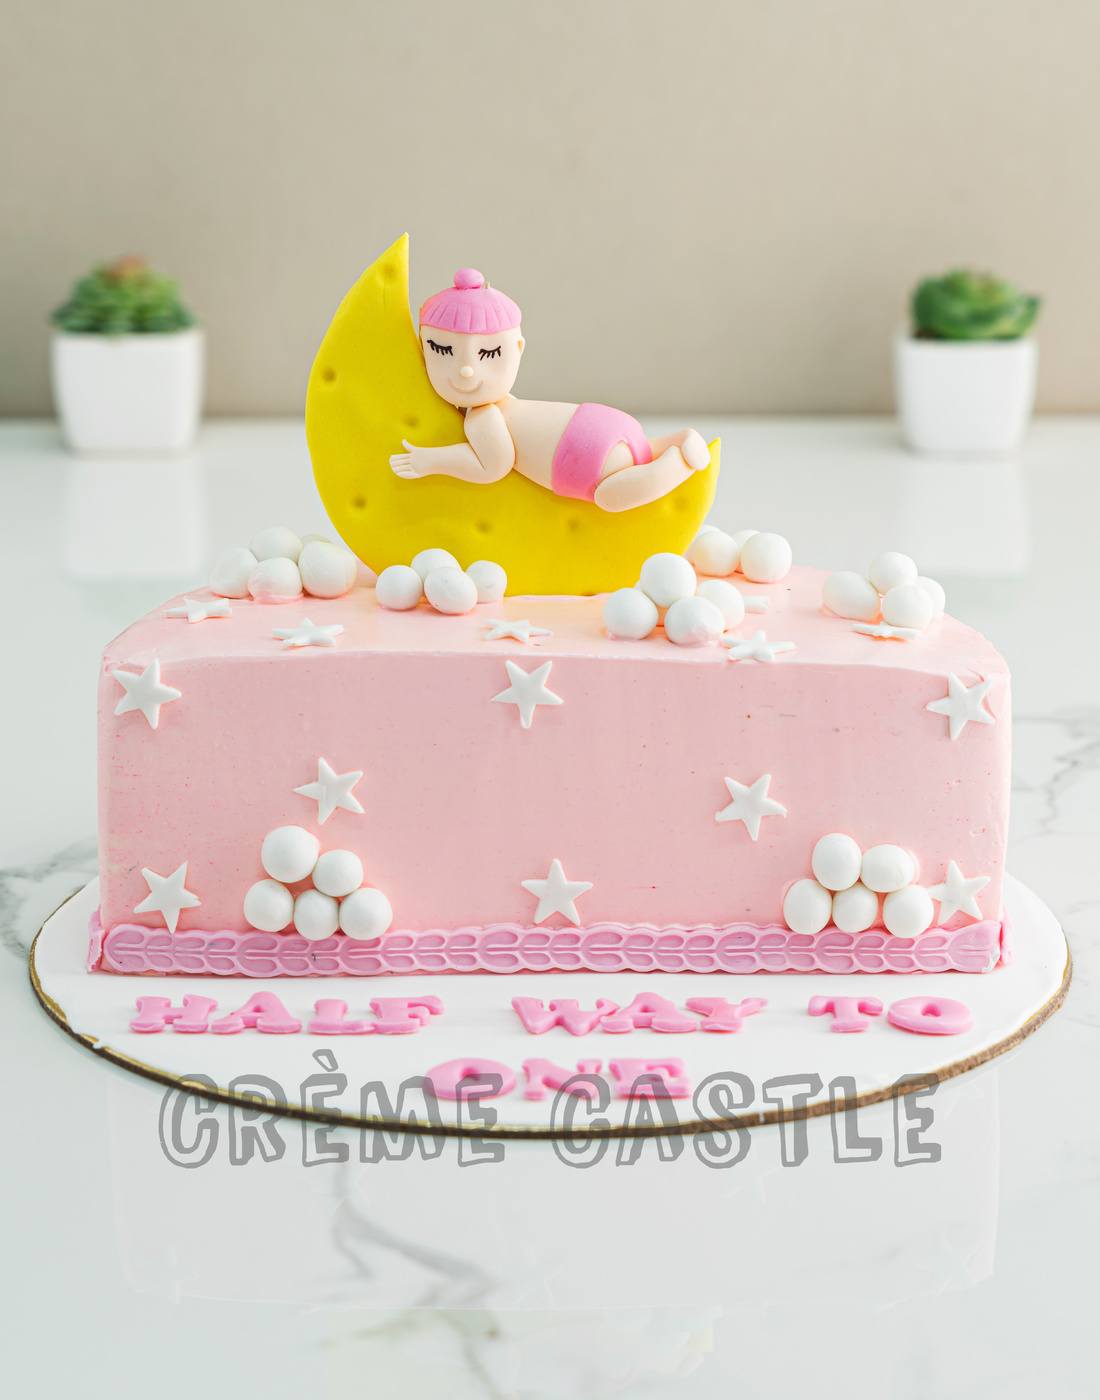 Alice Bakes a Cake: Lemon moon cake